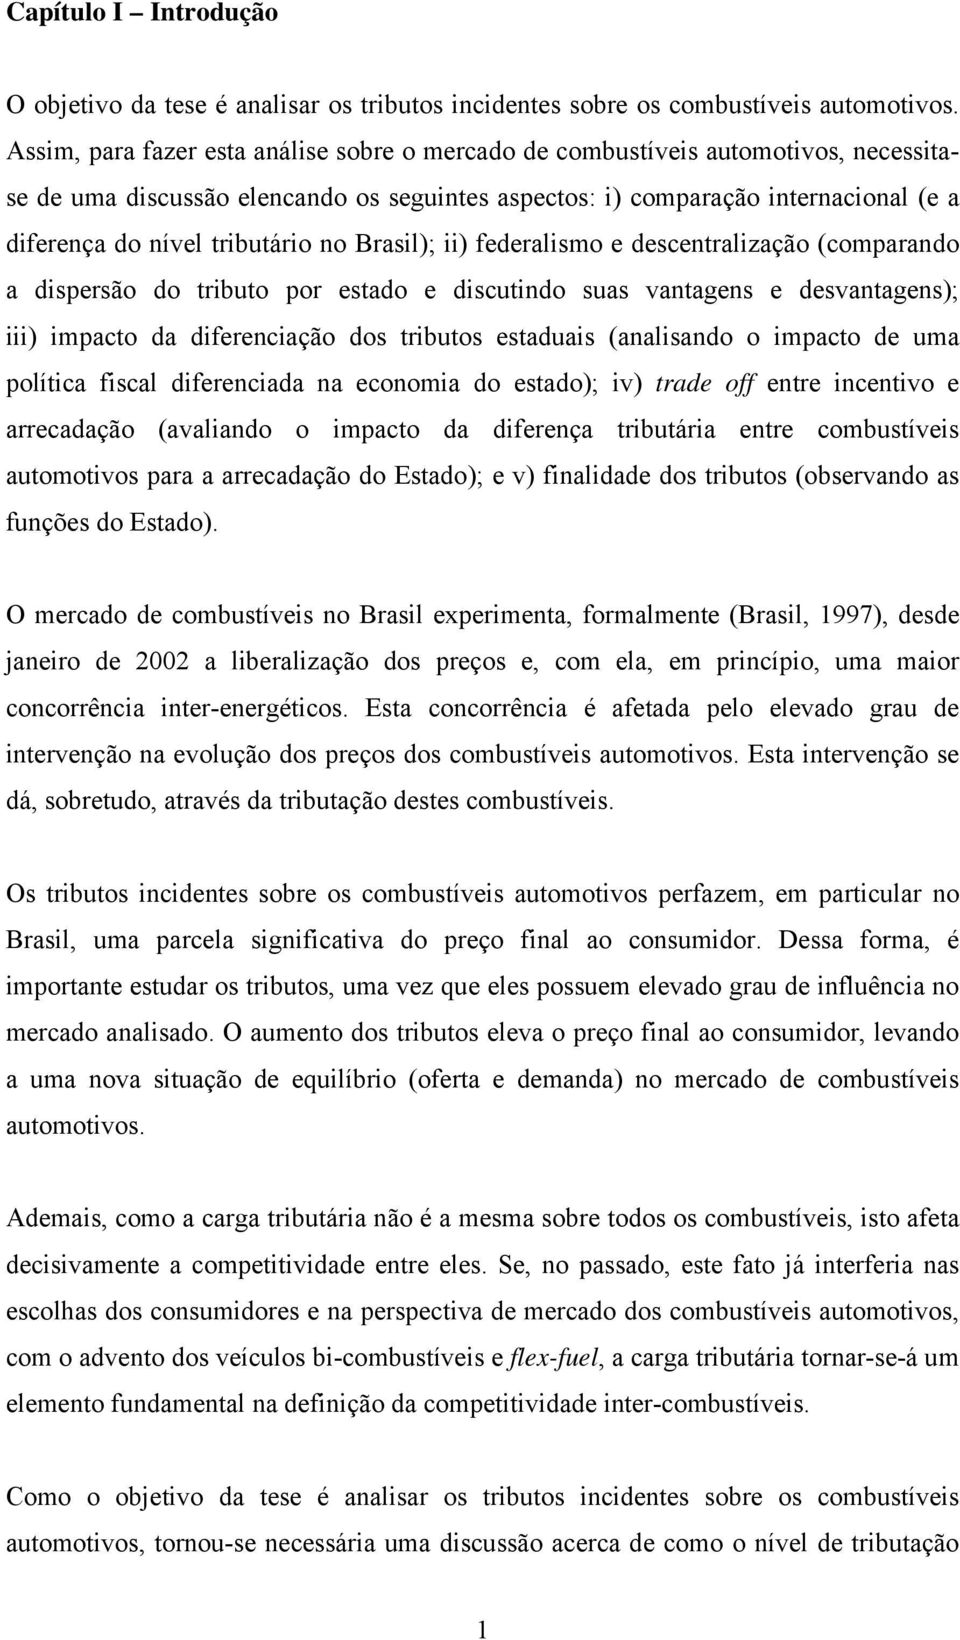 tributário no Brasil); ii) federalismo e descentralização (comparando a dispersão do tributo por estado e discutindo suas vantagens e desvantagens); iii) impacto da diferenciação dos tributos